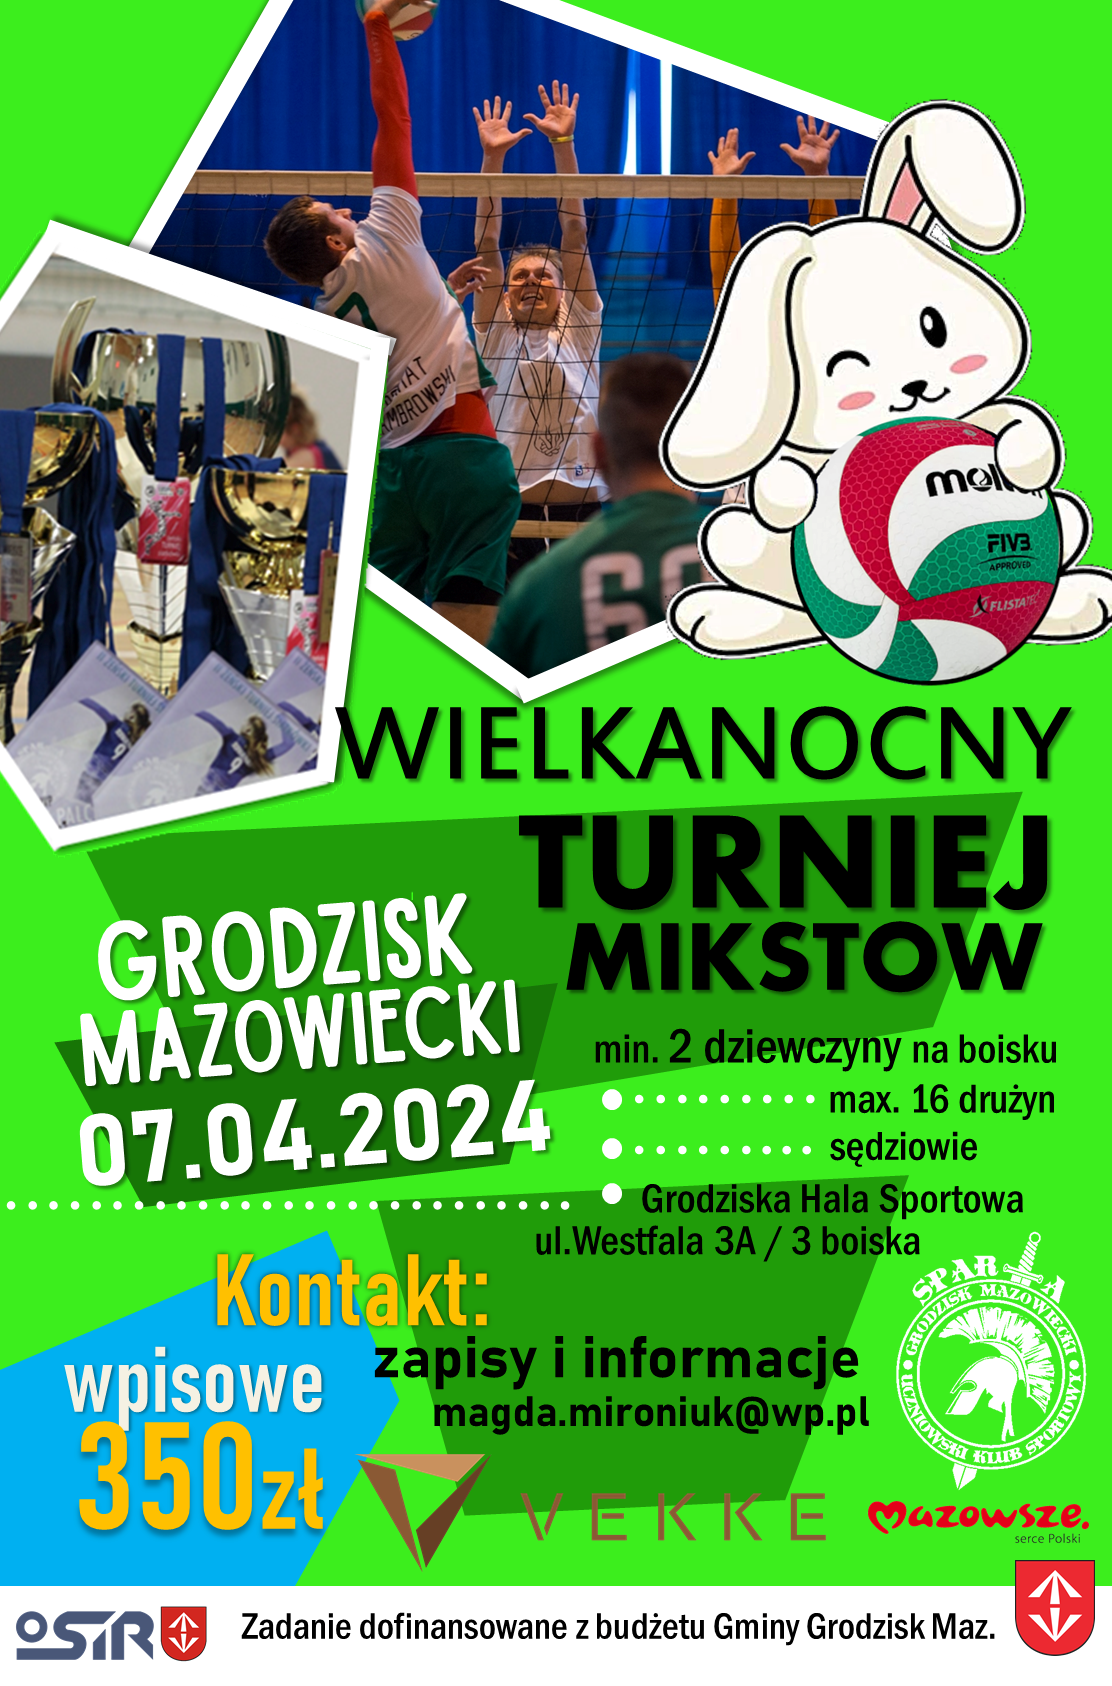 Wielkanocny Turniej Siatkówki Mikstów - Grodziska Hala Sportowa (ul. Westfala 3a)